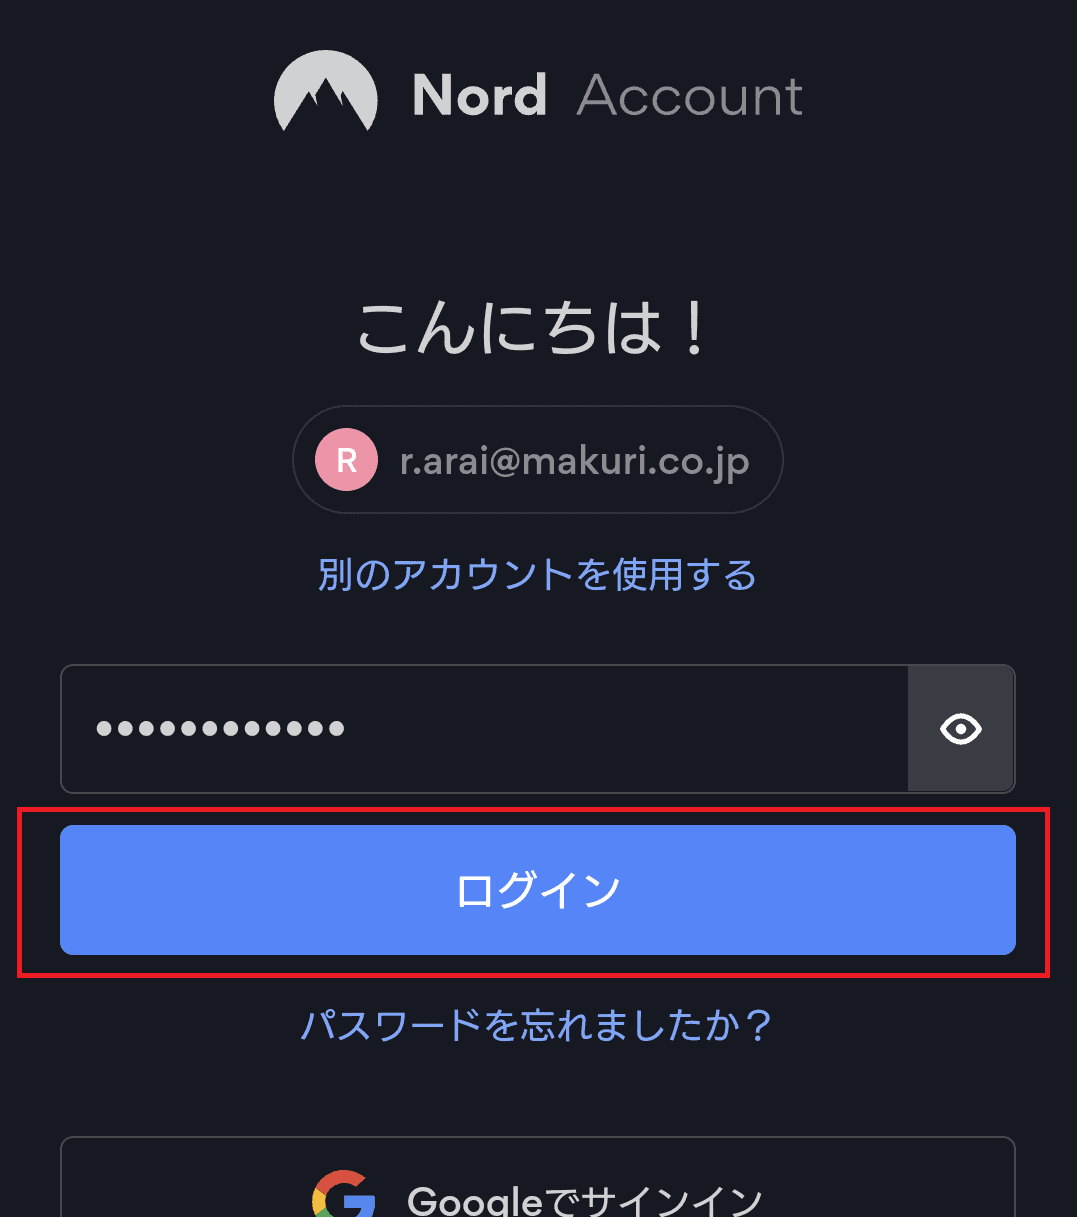 NordVPNのAndroidスマホ専用アプリにログインする